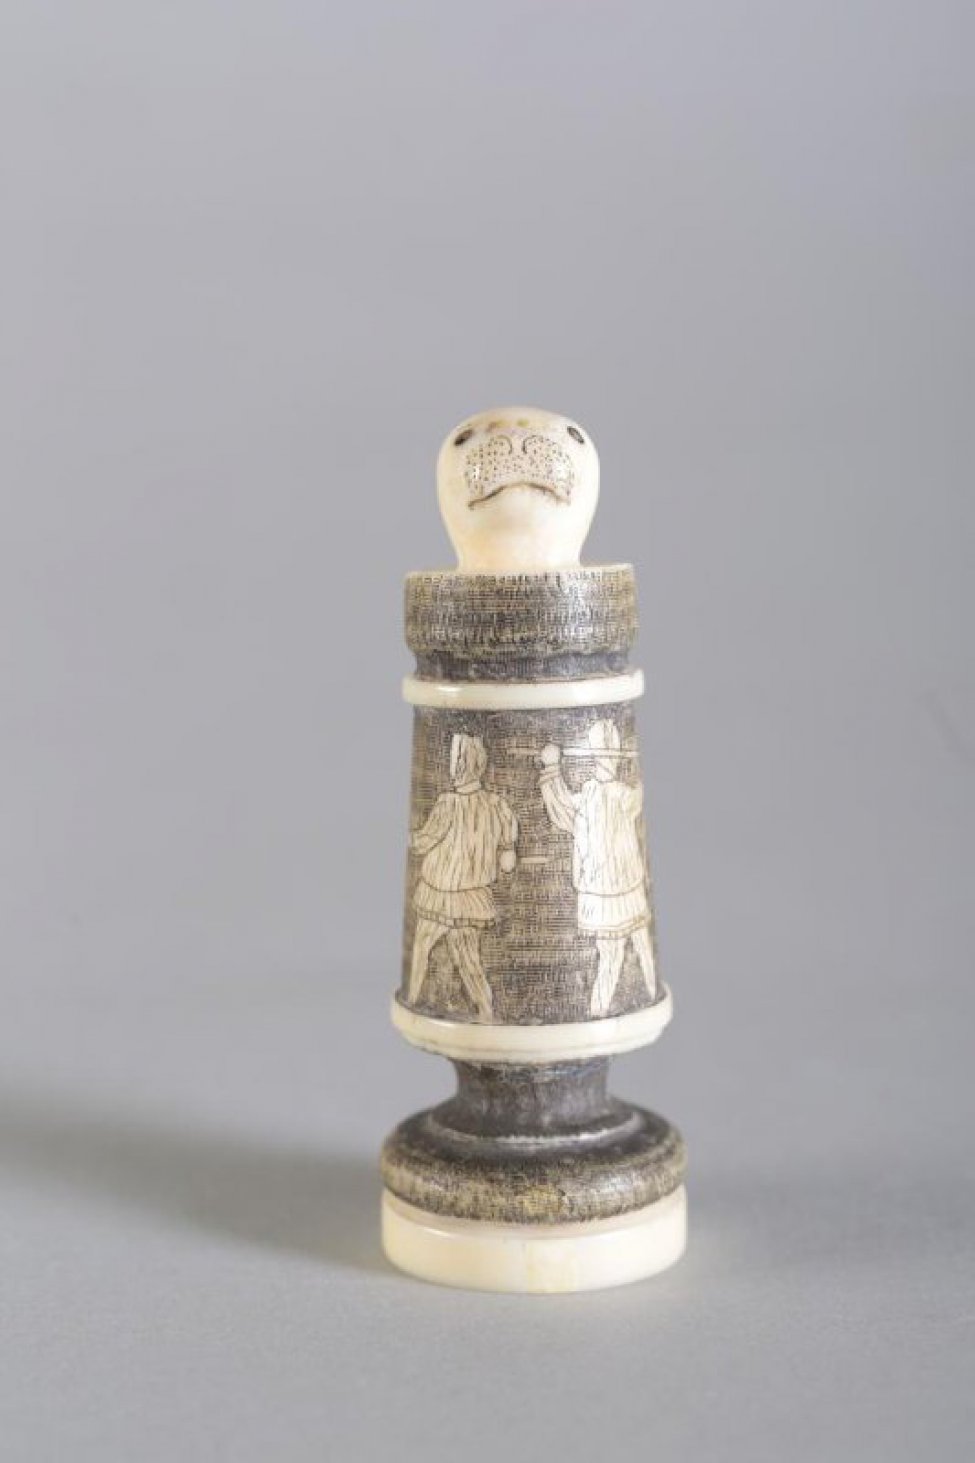 Шахматная фигура в виде цилиндрической профилированной балясины, вверху заканчивается головой нерпы. Голова нерпы  белого цвета, с обозначенными неглубокой резьбой (процарапыванием) маленькими круглыми глазами, линией рта и точками на морде. Средняя  часть покрыта тонированной в черный цвет гравировкой, где изображены в цвете кости две фигуры охотников в зимней одежде, вонзившие с двух сторон гарпуны в огромного моржа с длинными бивнями с повернутой влево головой. Фигуры охотников в 3/4 повороте спинами друг к другу, морж - на обороте  шахматной фигуры. Два профилированных пояска и низ постамента белого цвета. Вся фигура выполнена из одного куска бивня. На дне постамента процарапано «1925 Г.»